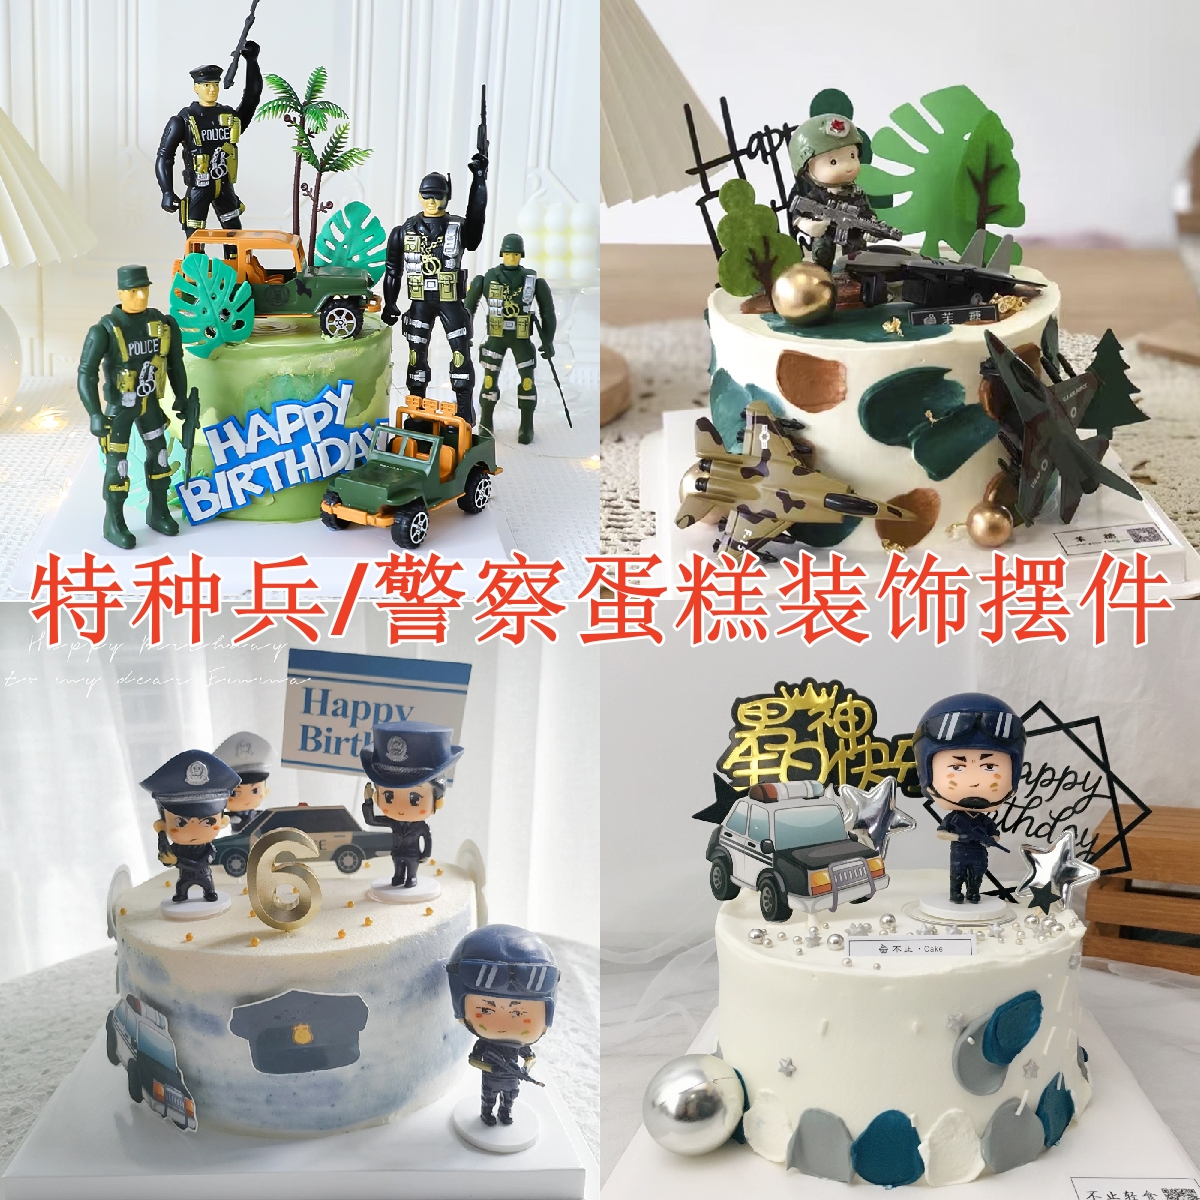 国庆节特种兵军人警察坦克蛋糕装饰男孩生日烘焙甜品装扮配件插牌